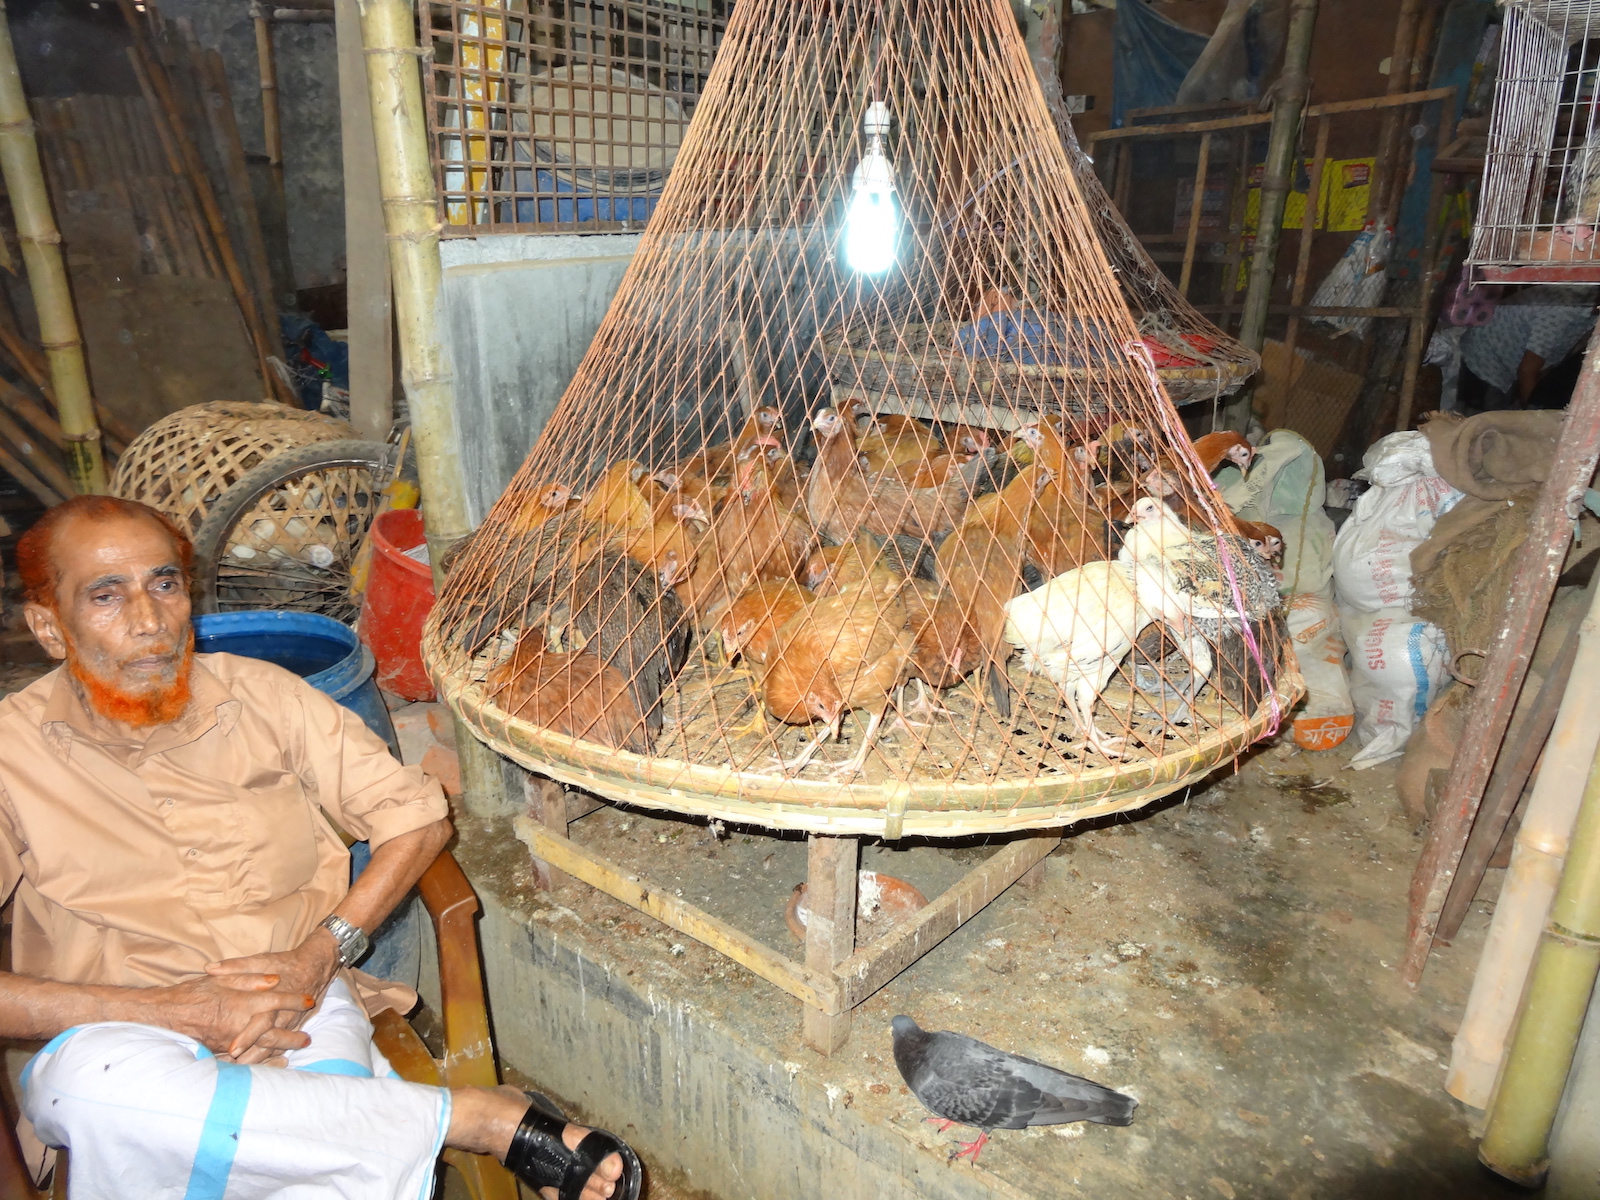 Man next to caged chickens in live bird market, Bangladesh